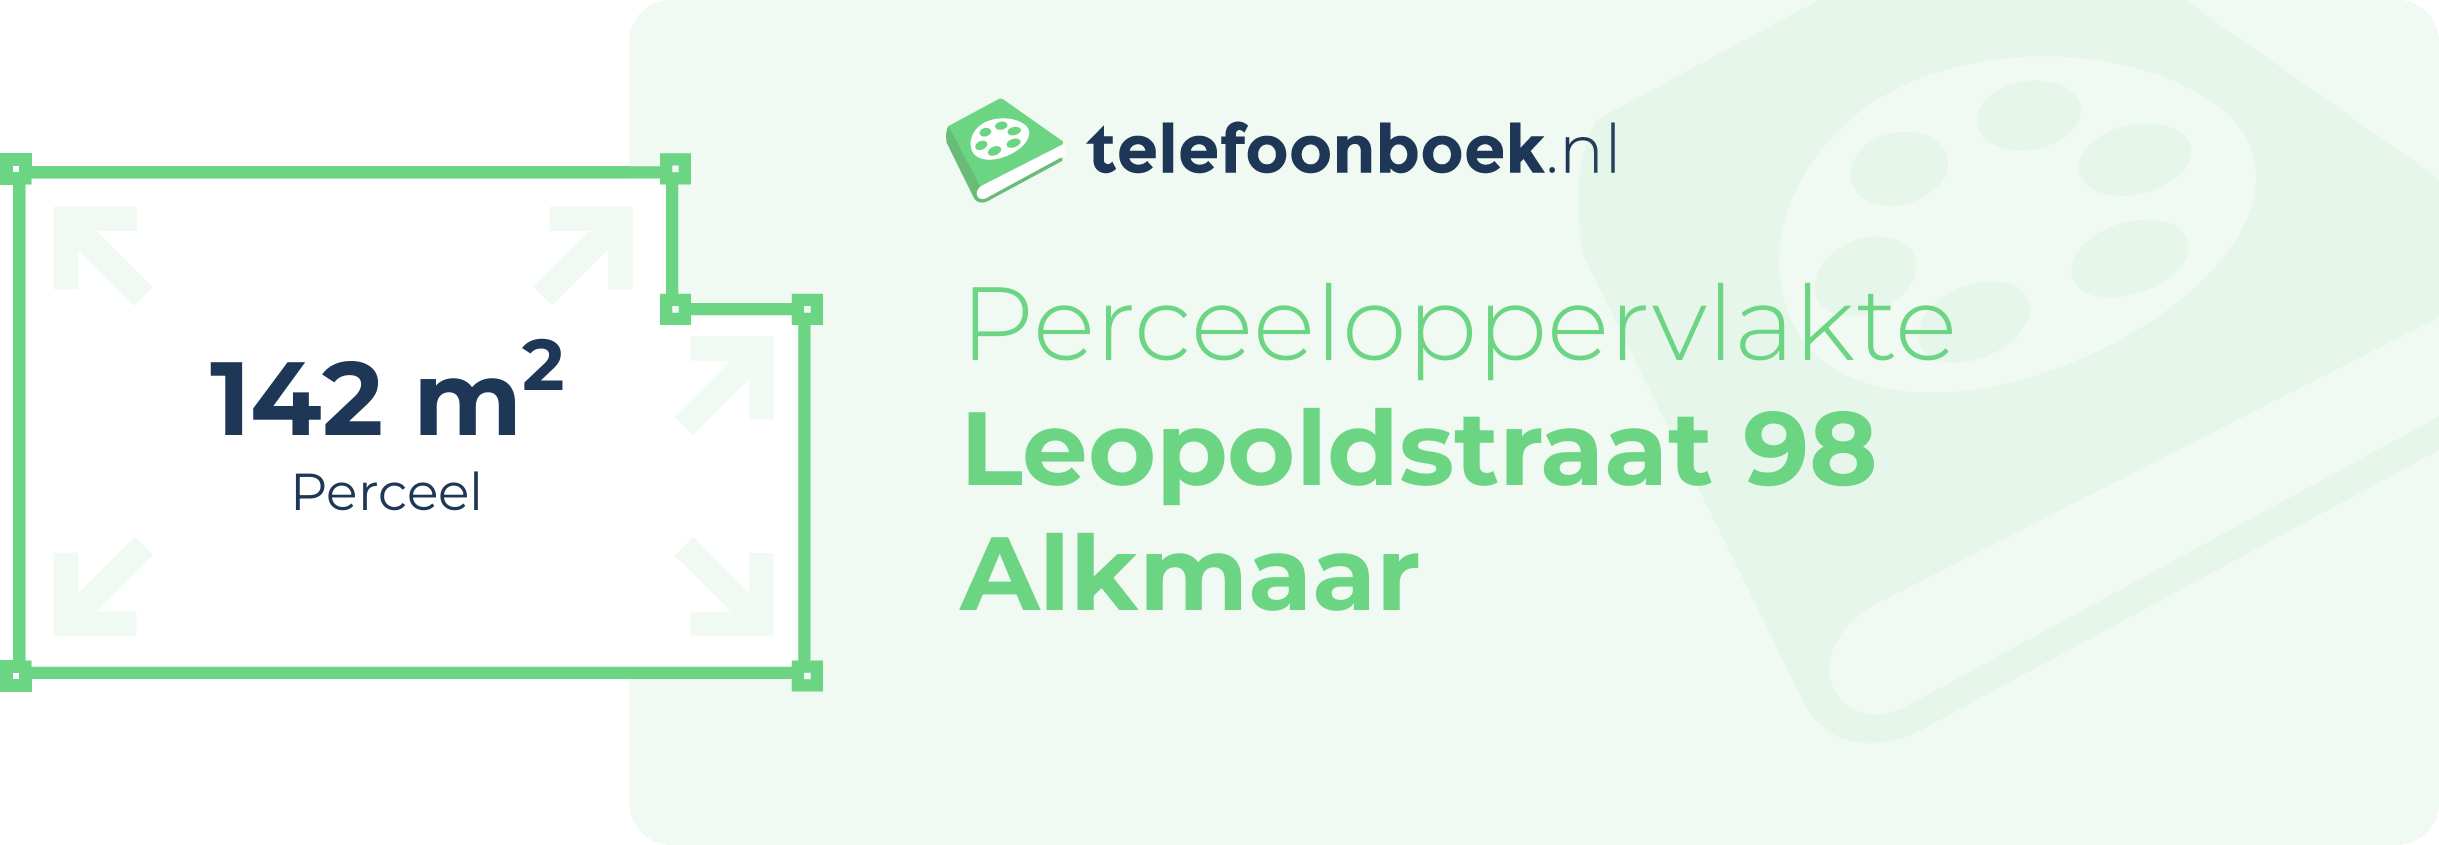 Perceeloppervlakte Leopoldstraat 98 Alkmaar